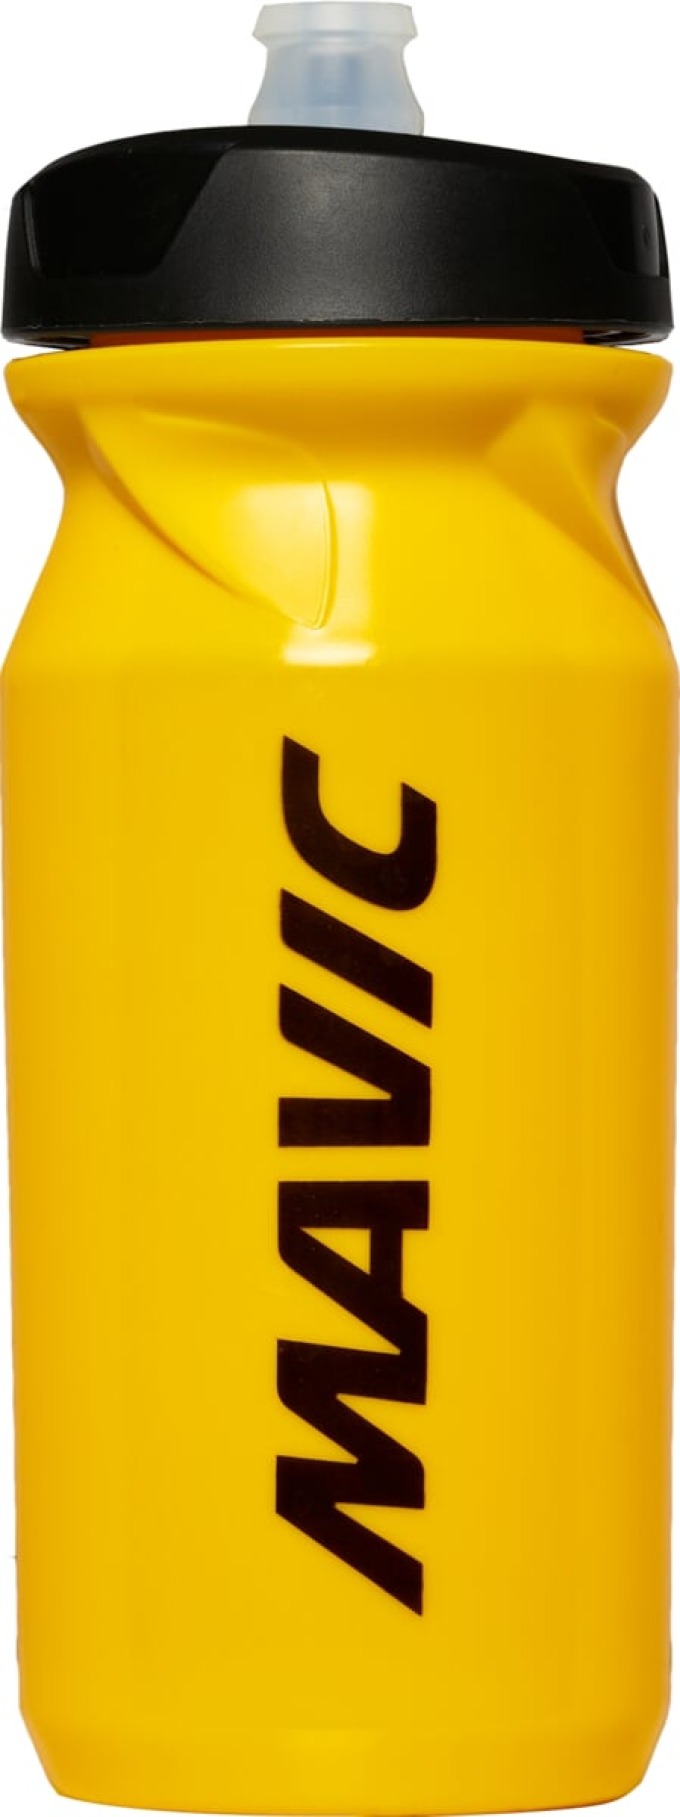 Láhev s objemem 0,65l a žlutou barvou vyrobená z speciálního polypropylenu, který udržuje nápoje čisté a umožňuje snadné pití